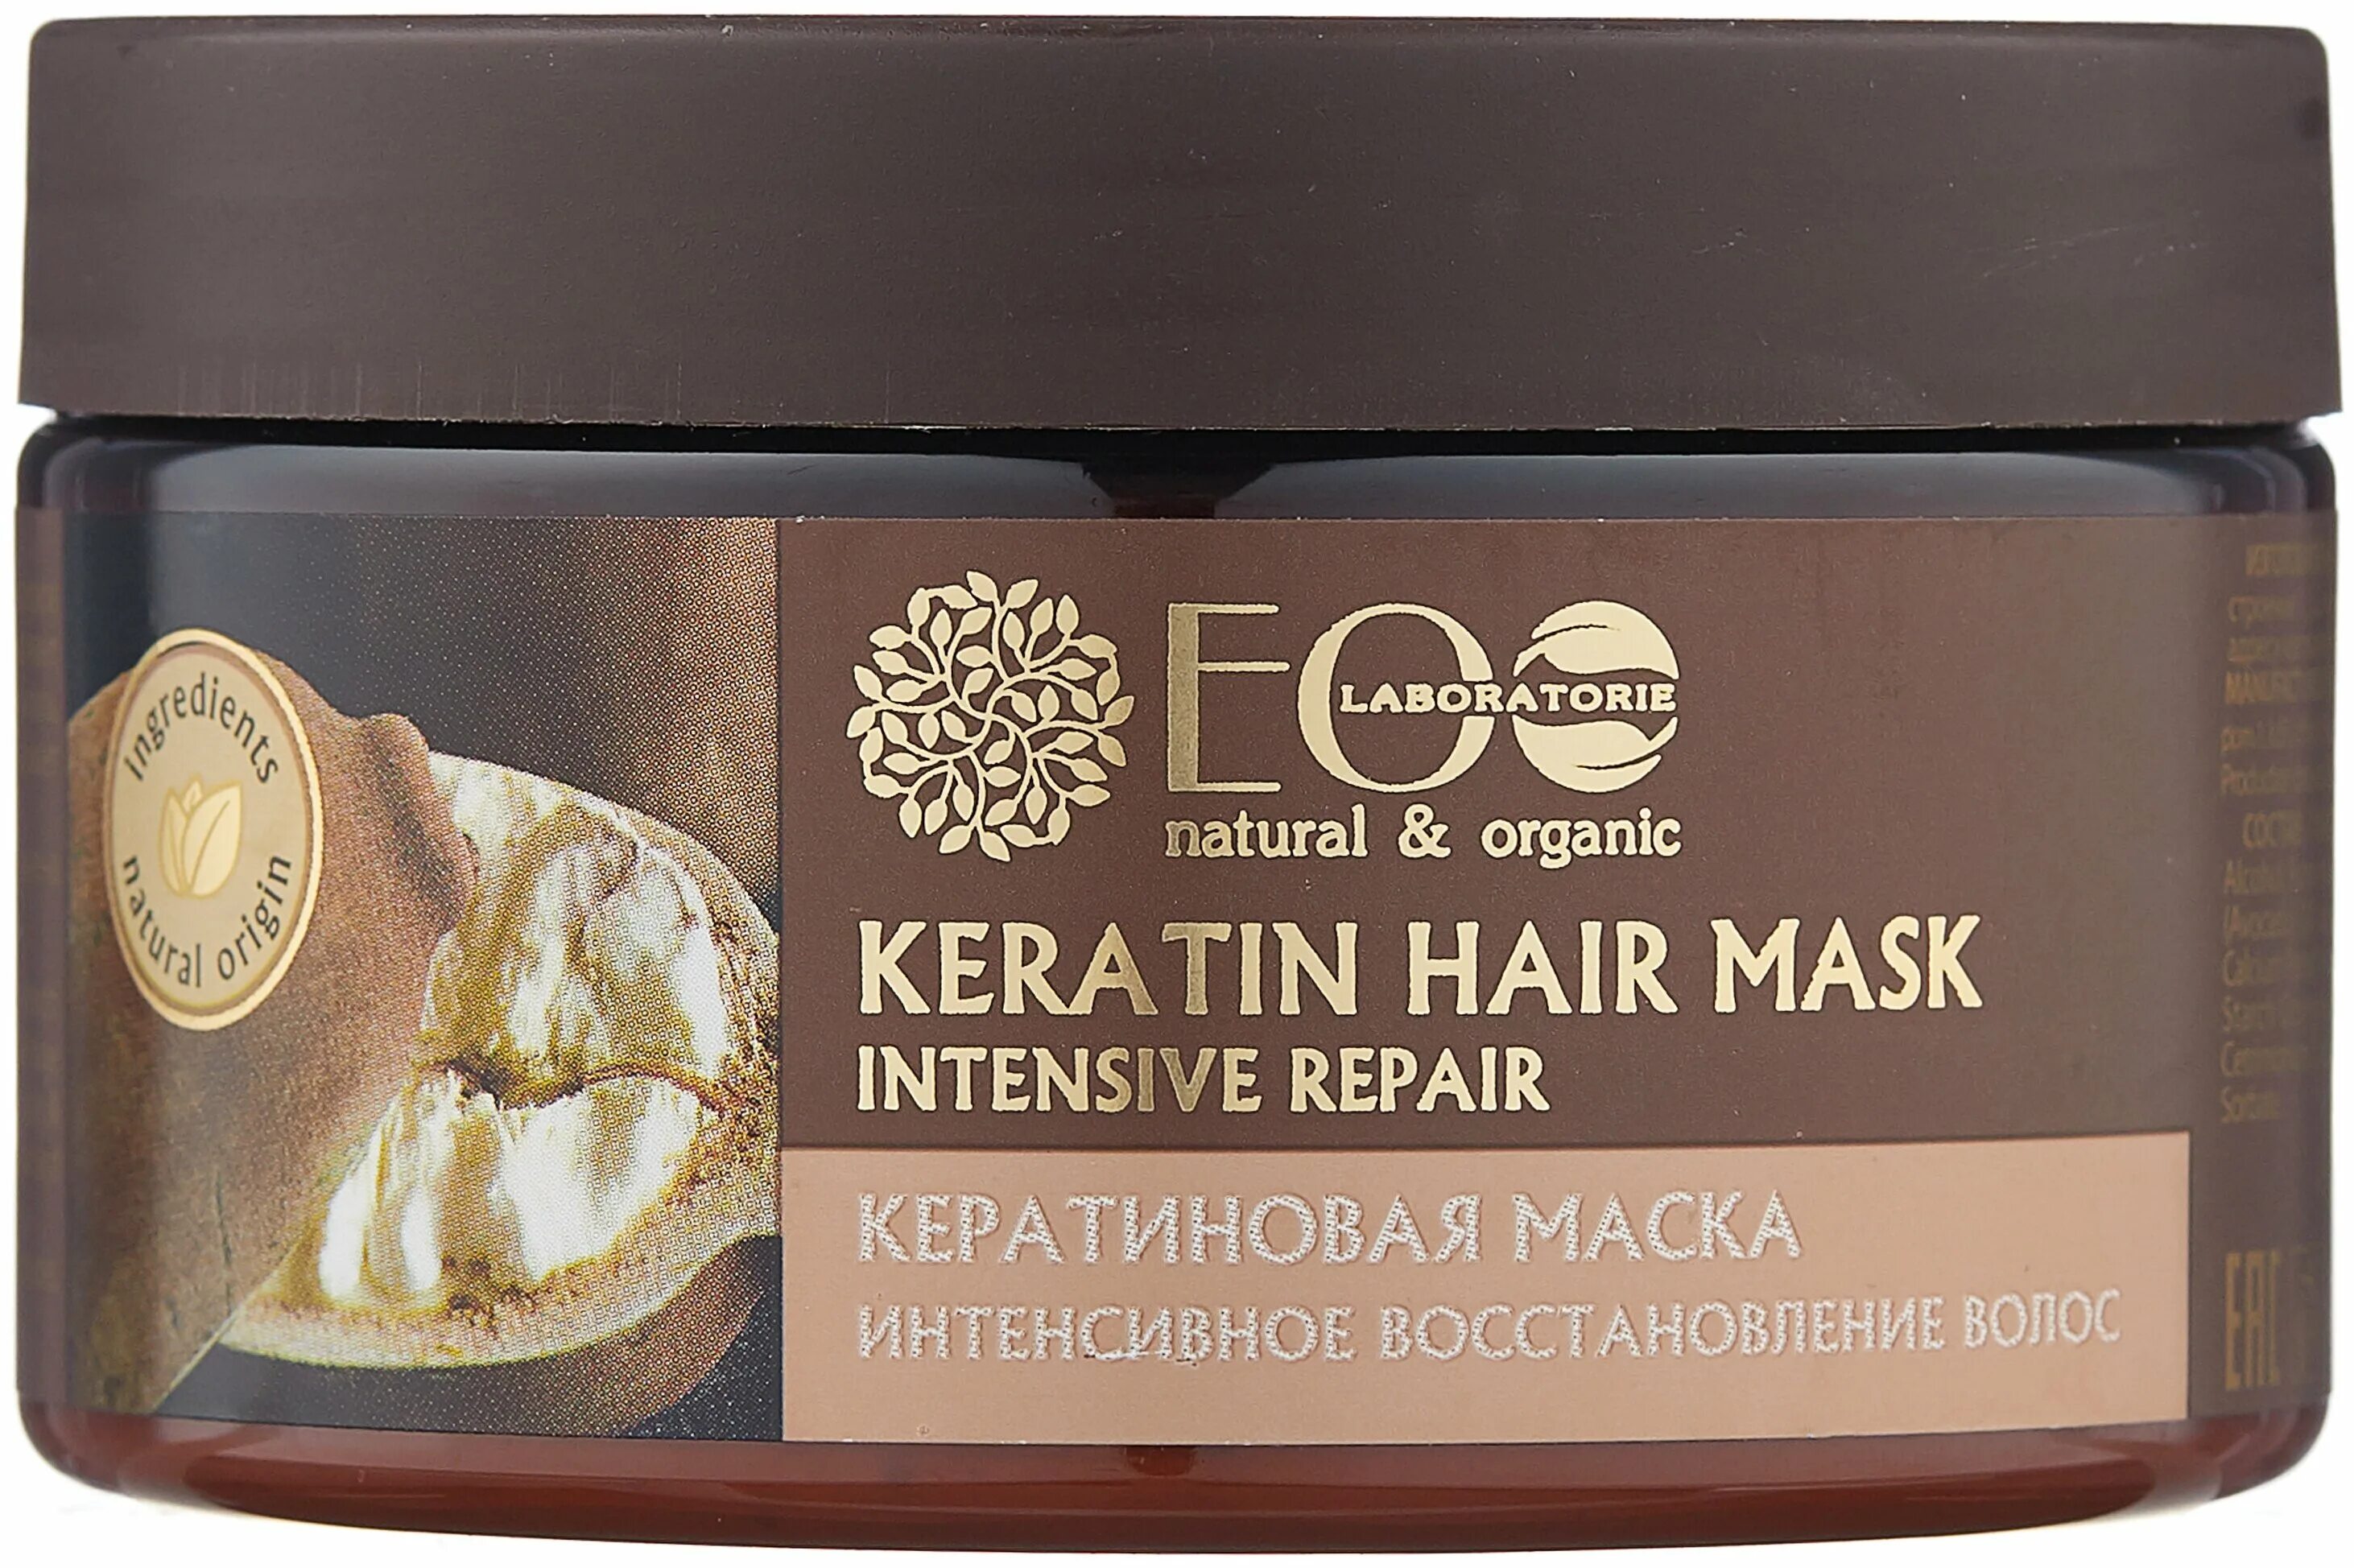 Восстанавливающие маски с кератином. Eco Laboratories кератиновая маска. Маска для волос EO Laboratories. Кератиновая маска для волос Ecolab. Маска для волос бразильский купуасу.